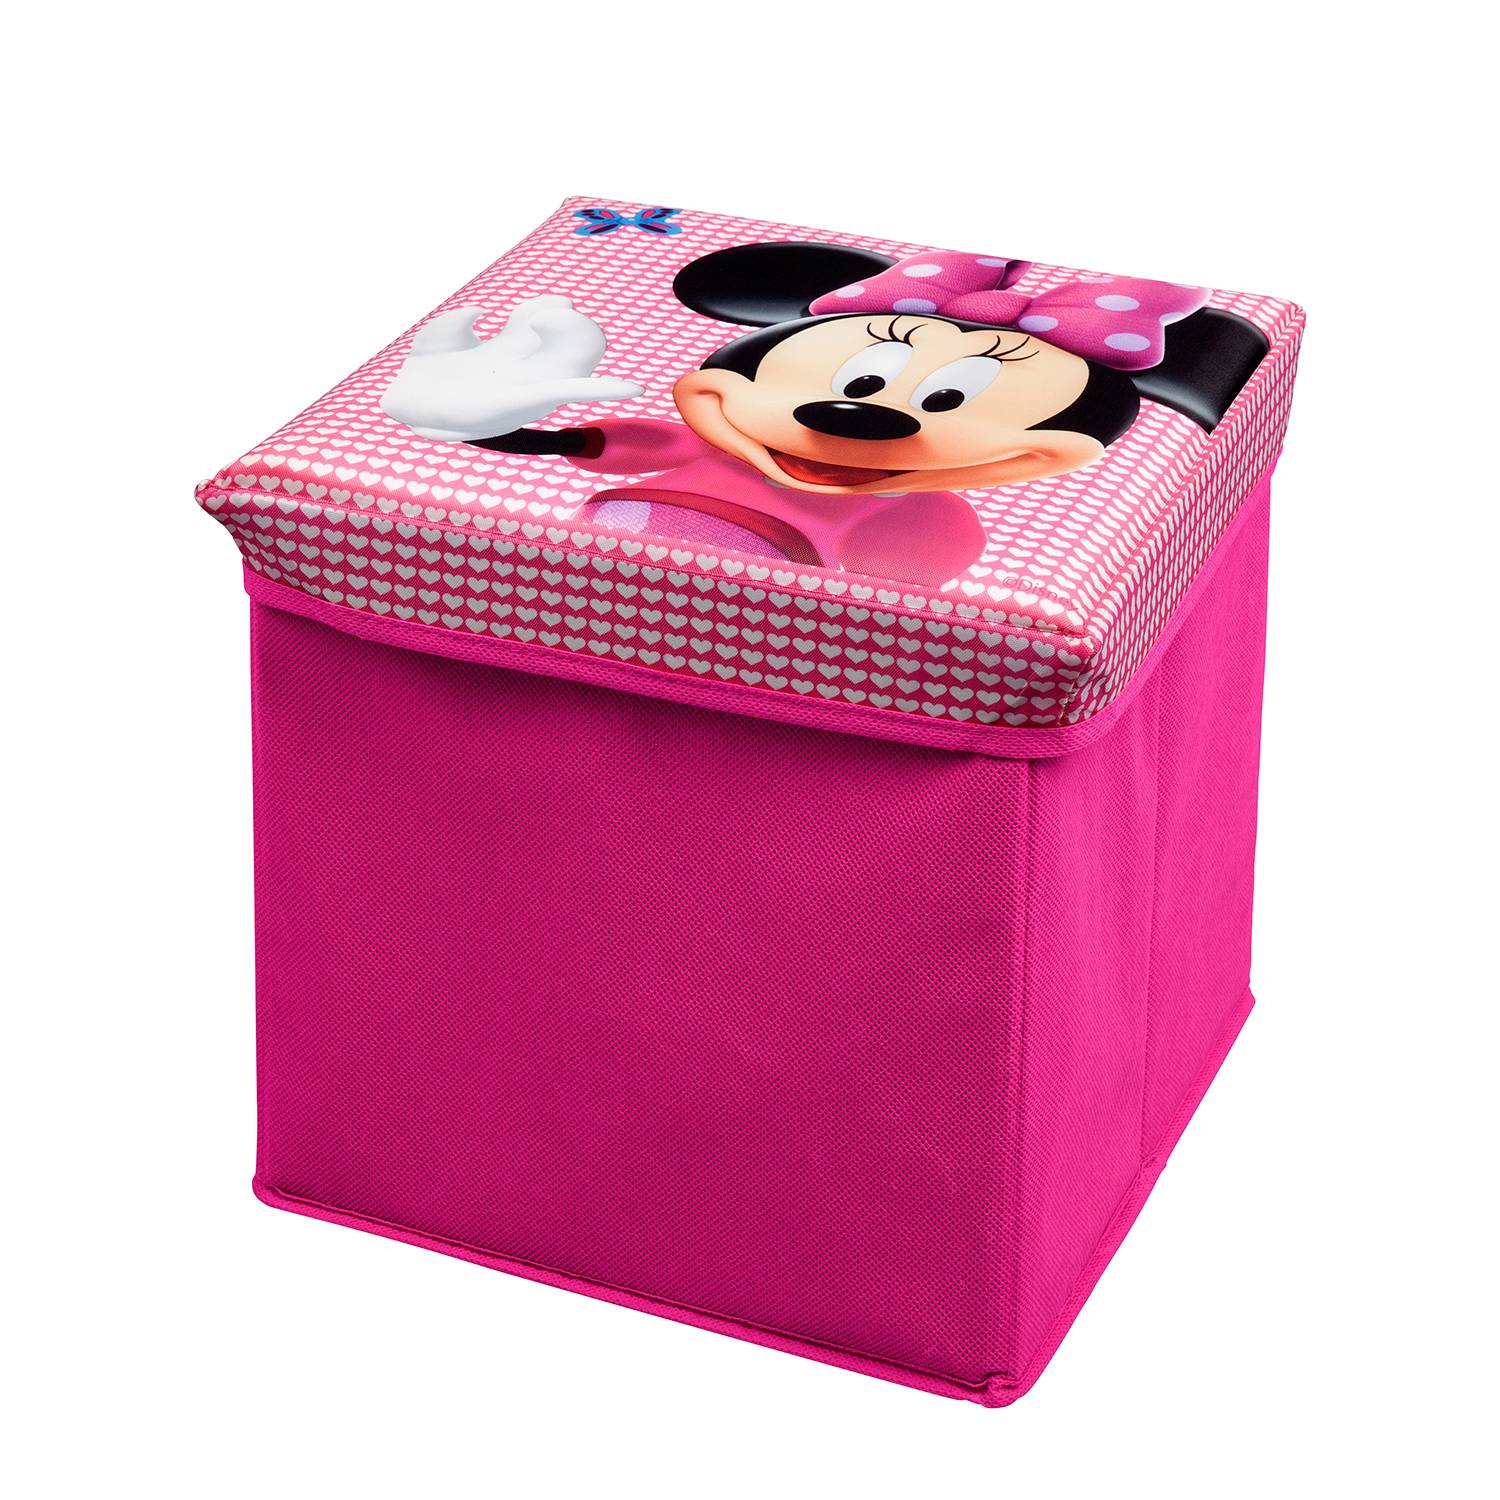 Aufbewahrungsbox Minnie Mouse, Delta Children